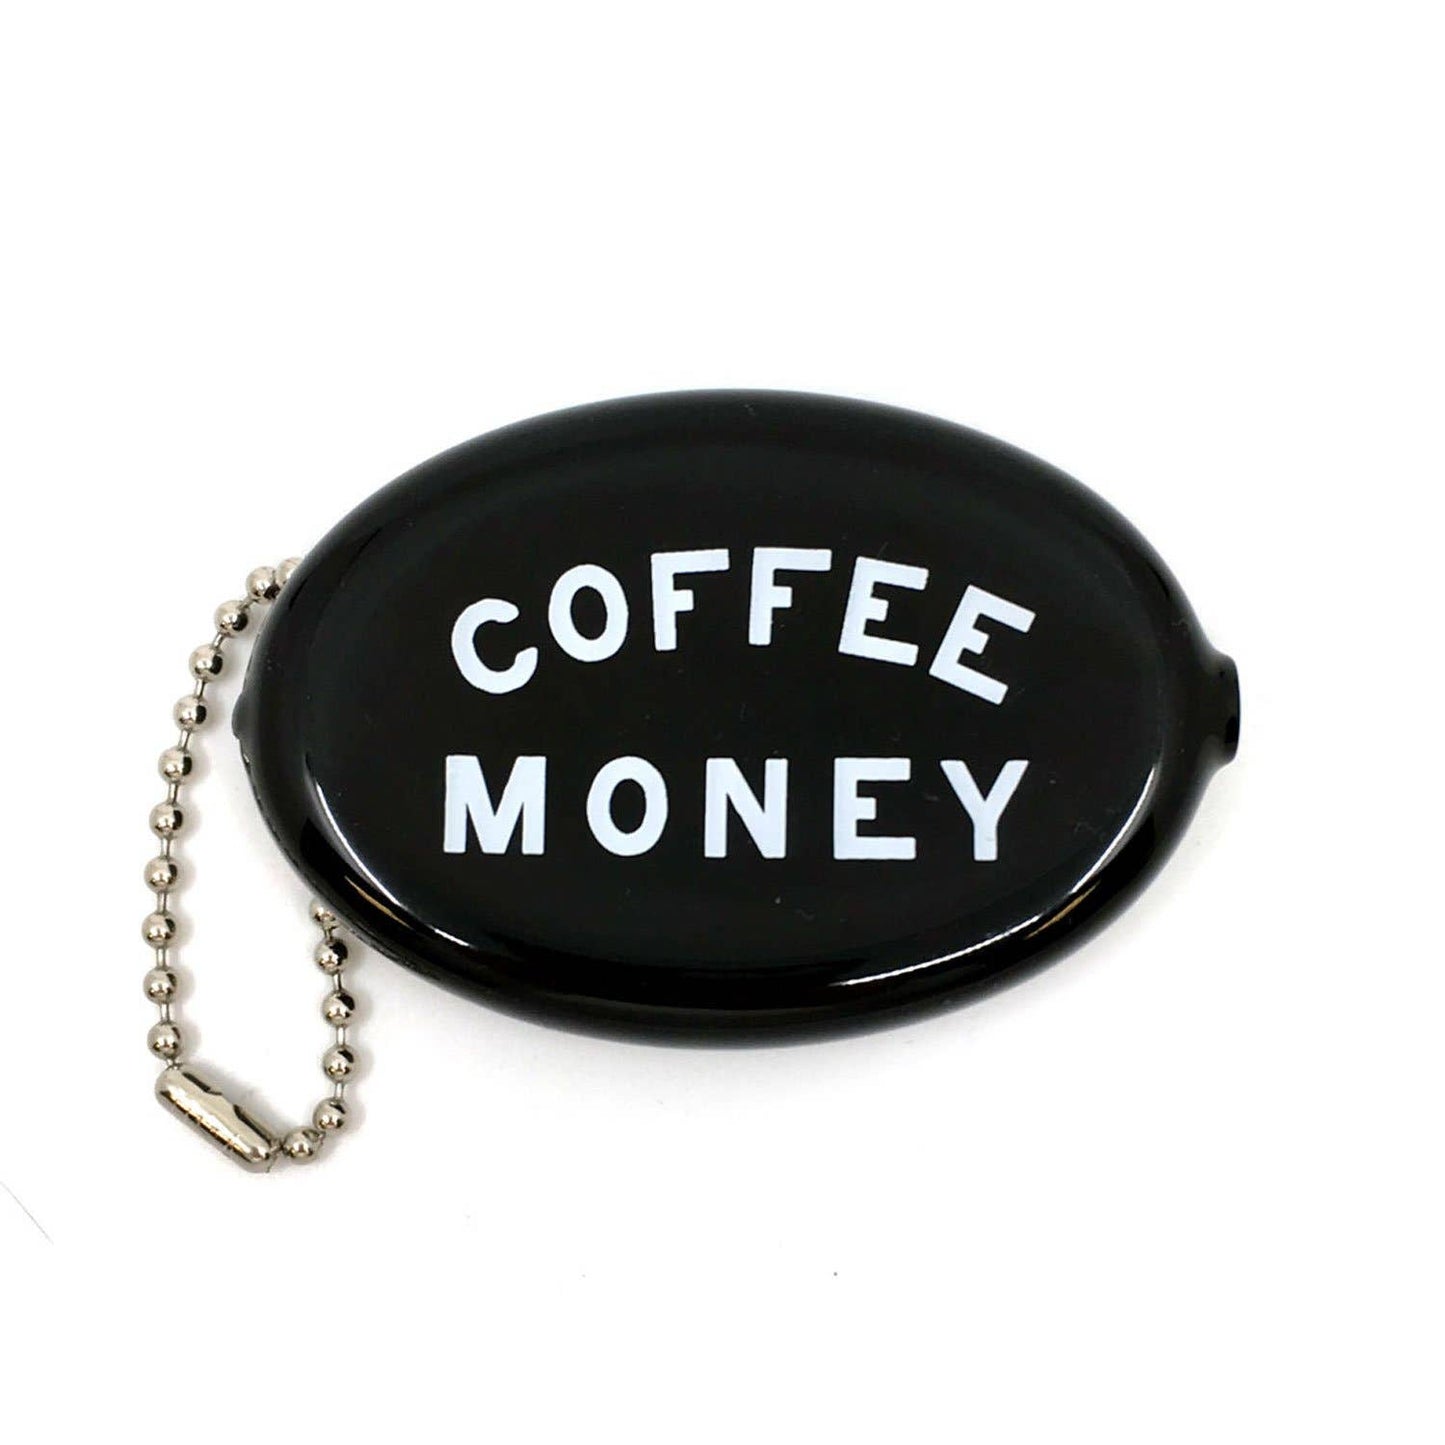 Coin Purse Key Chain - Coffee Money